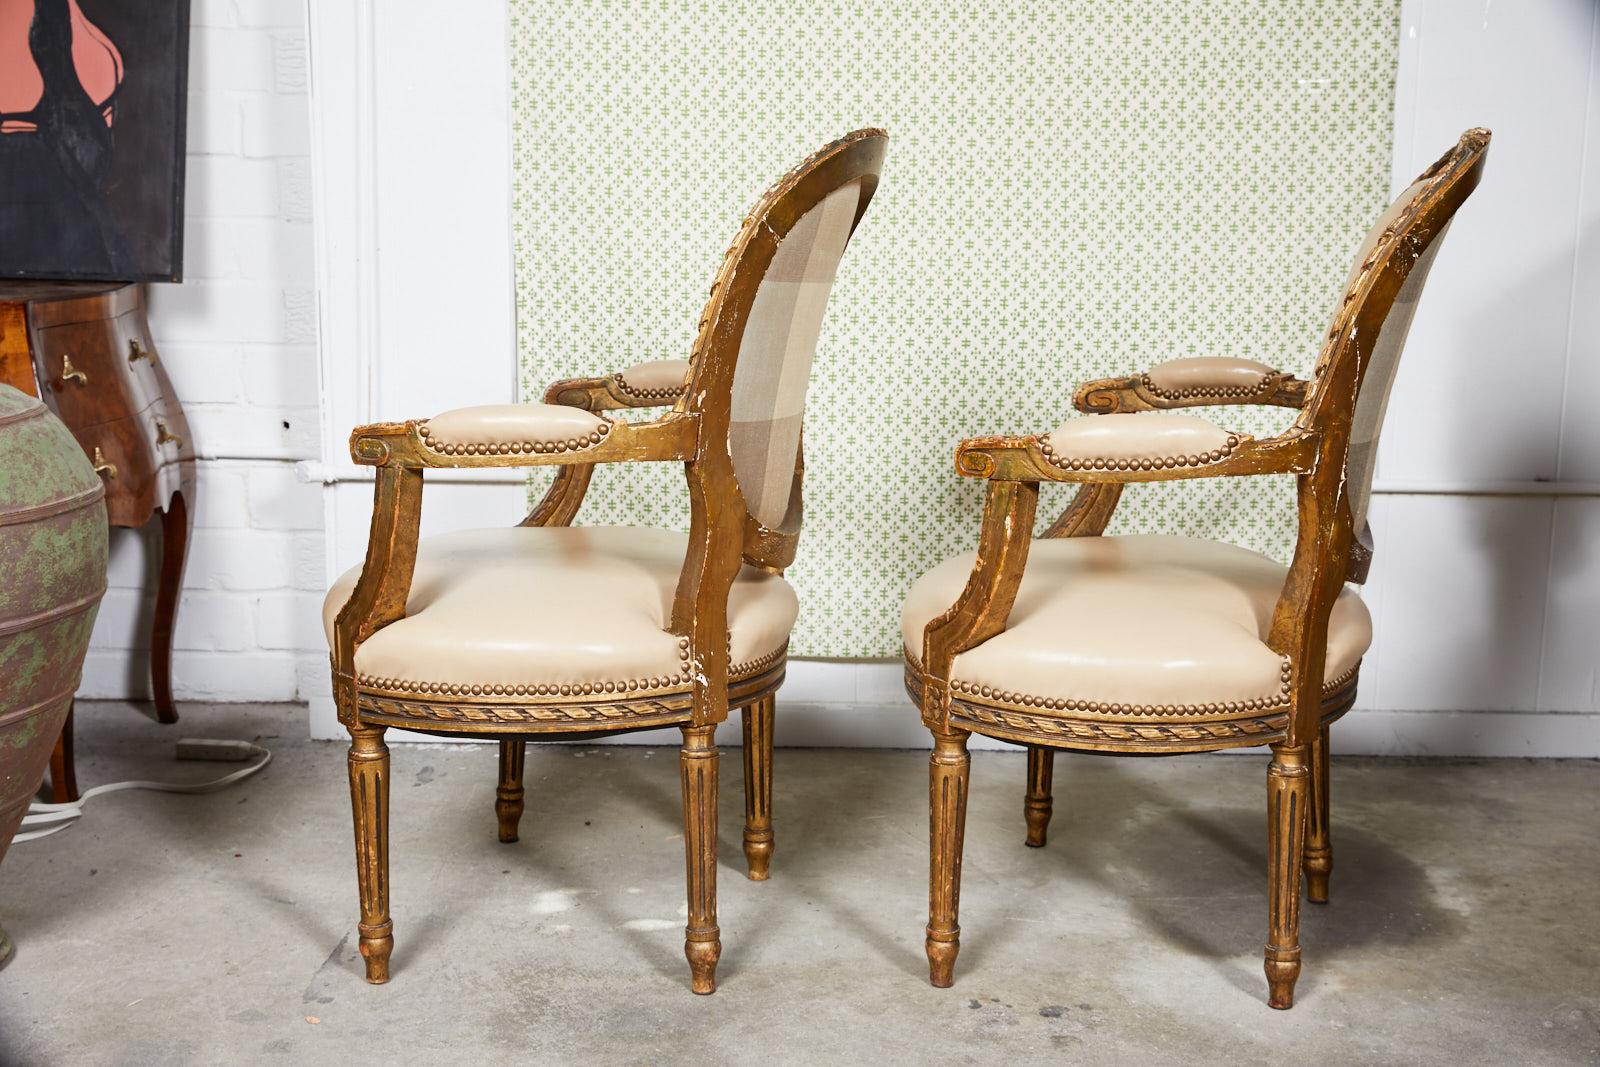 Zwei französische Fauteuils oder Sessel im Louis-XVI-Stil aus dem späten 19. Jahrhundert mit geschnitzten und vergoldeten Rahmen. Die Stühle sind wunderschön mit taupefarbenem Leder gepolstert und mit dekorativen bronzefarbenen Nägeln verziert. Die